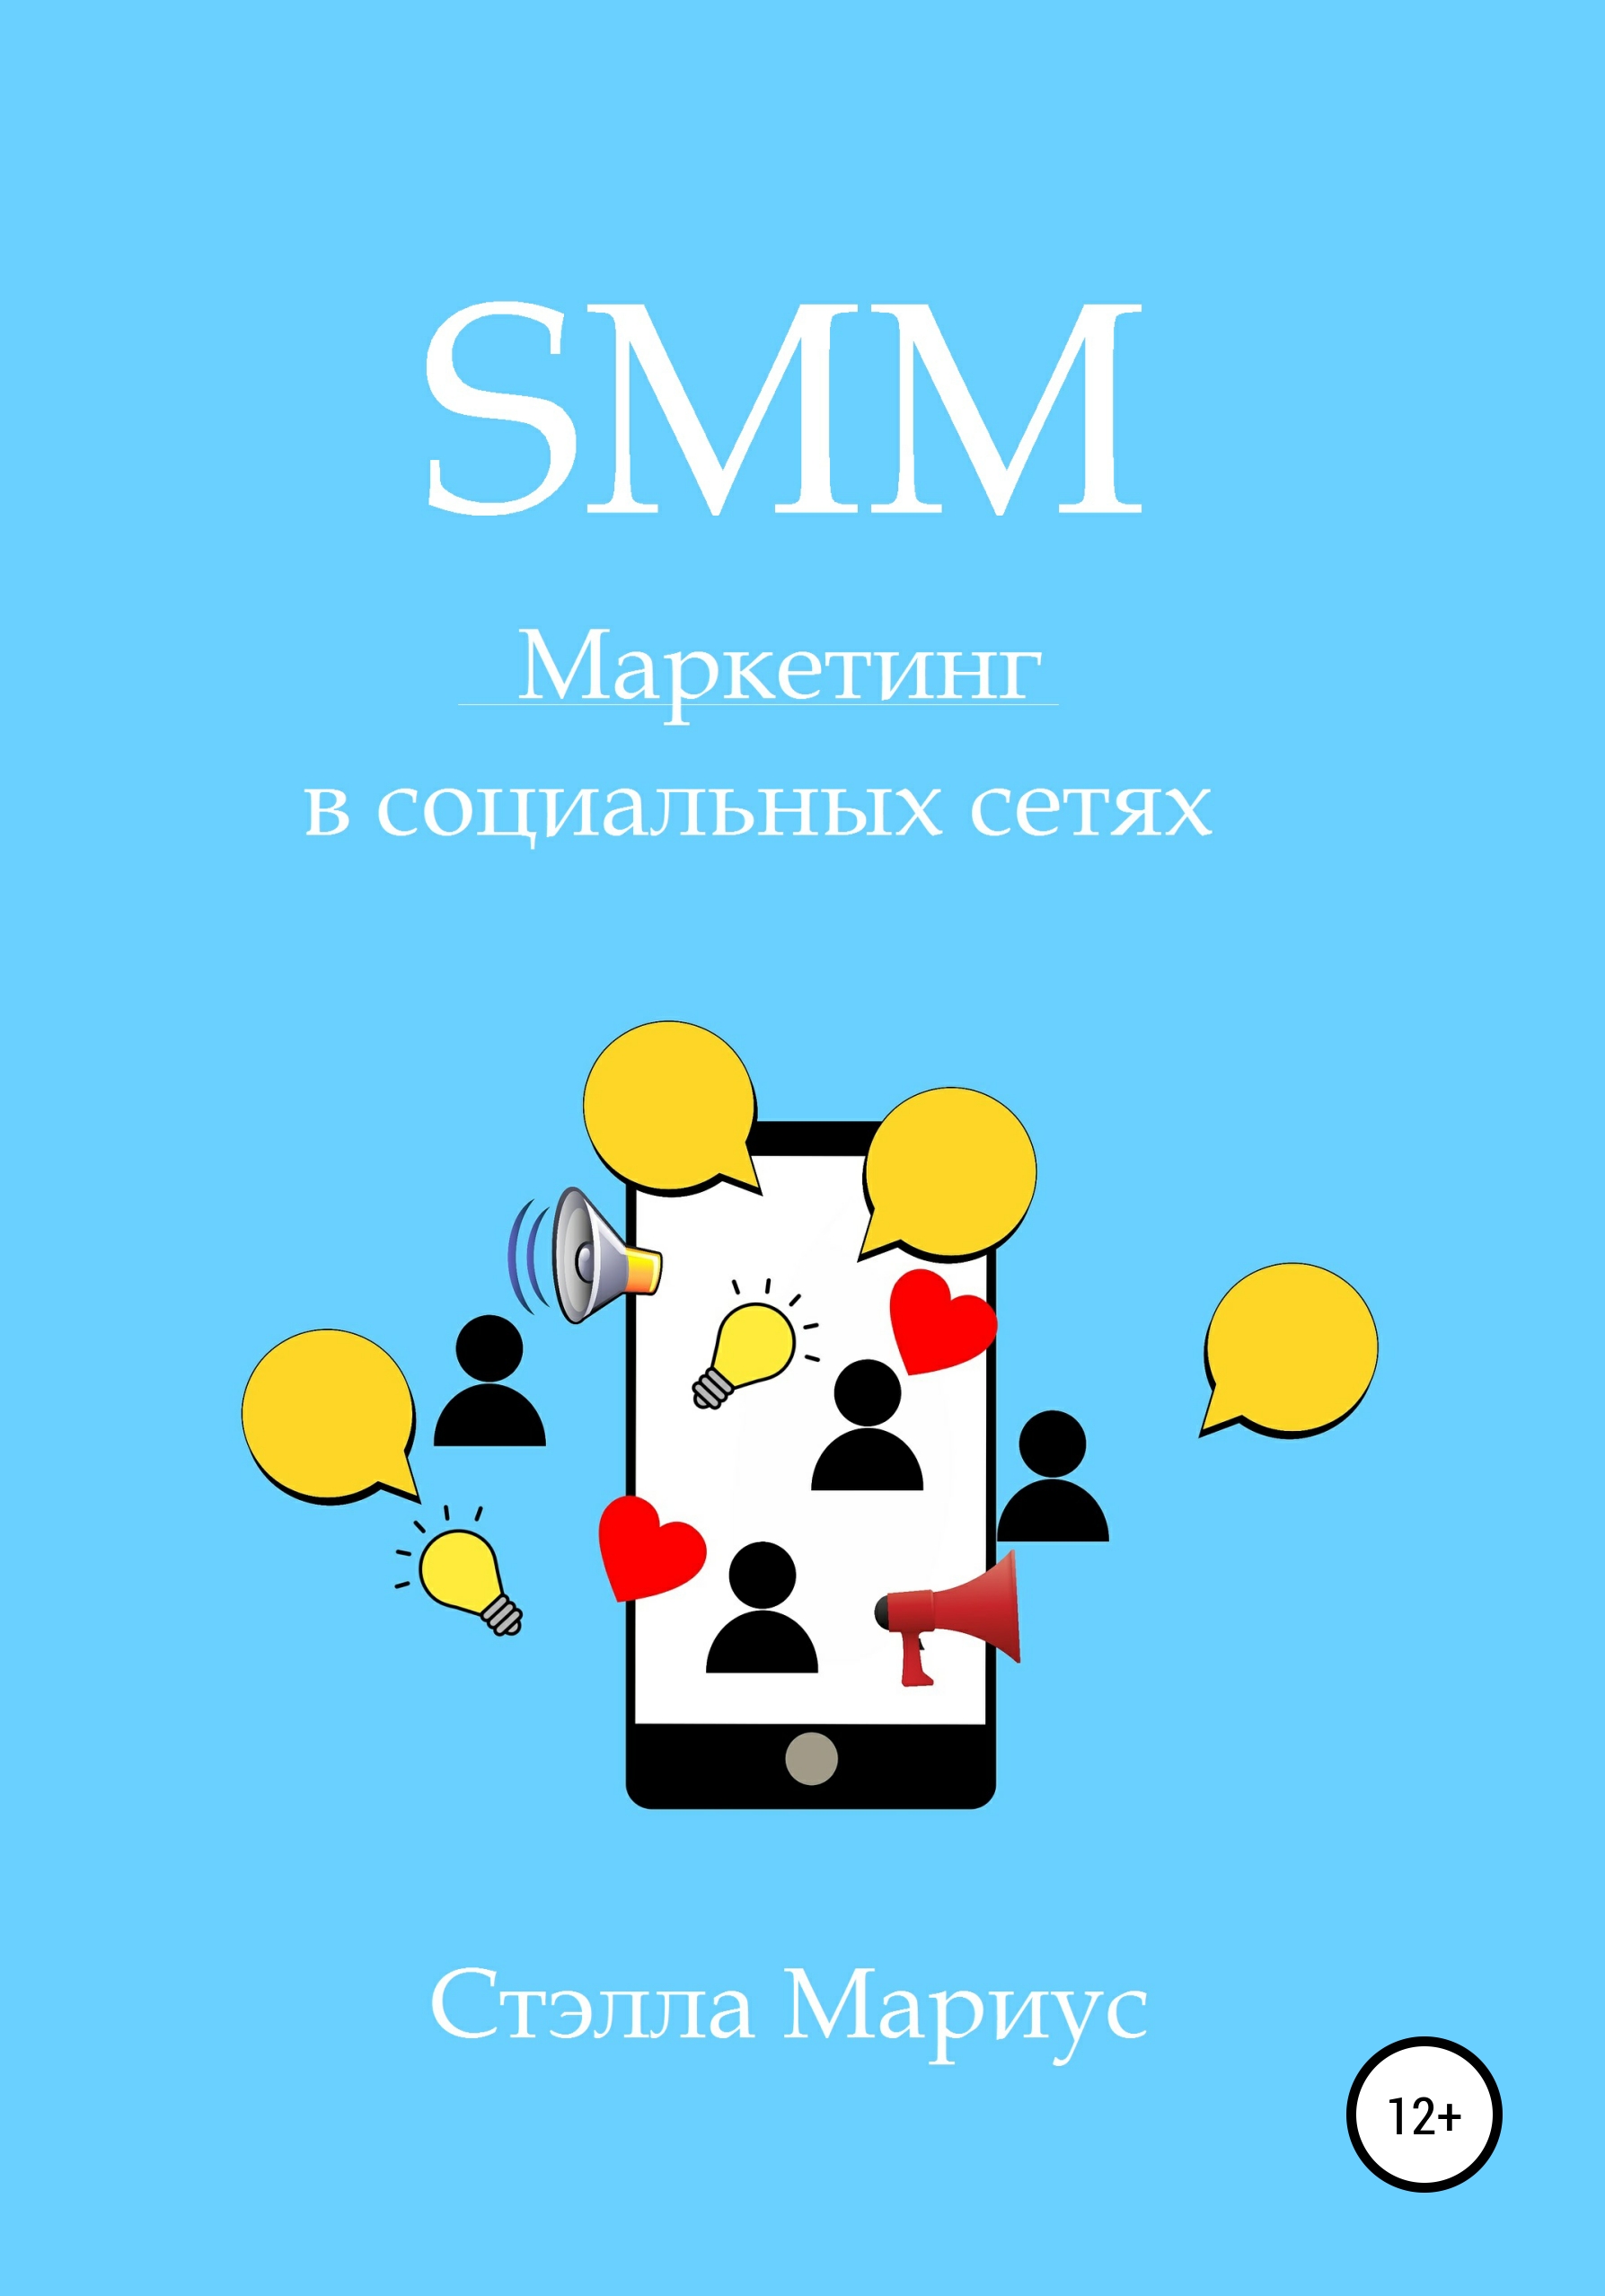 Книга  SMM. Маркетинг в социальных сетях созданная Стэлла Мариус может относится к жанру интернет-маркетинг, классический маркетинг, маркетинг для новичков. Стоимость электронной книги SMM. Маркетинг в социальных сетях с идентификатором 55303505 составляет 119.00 руб.